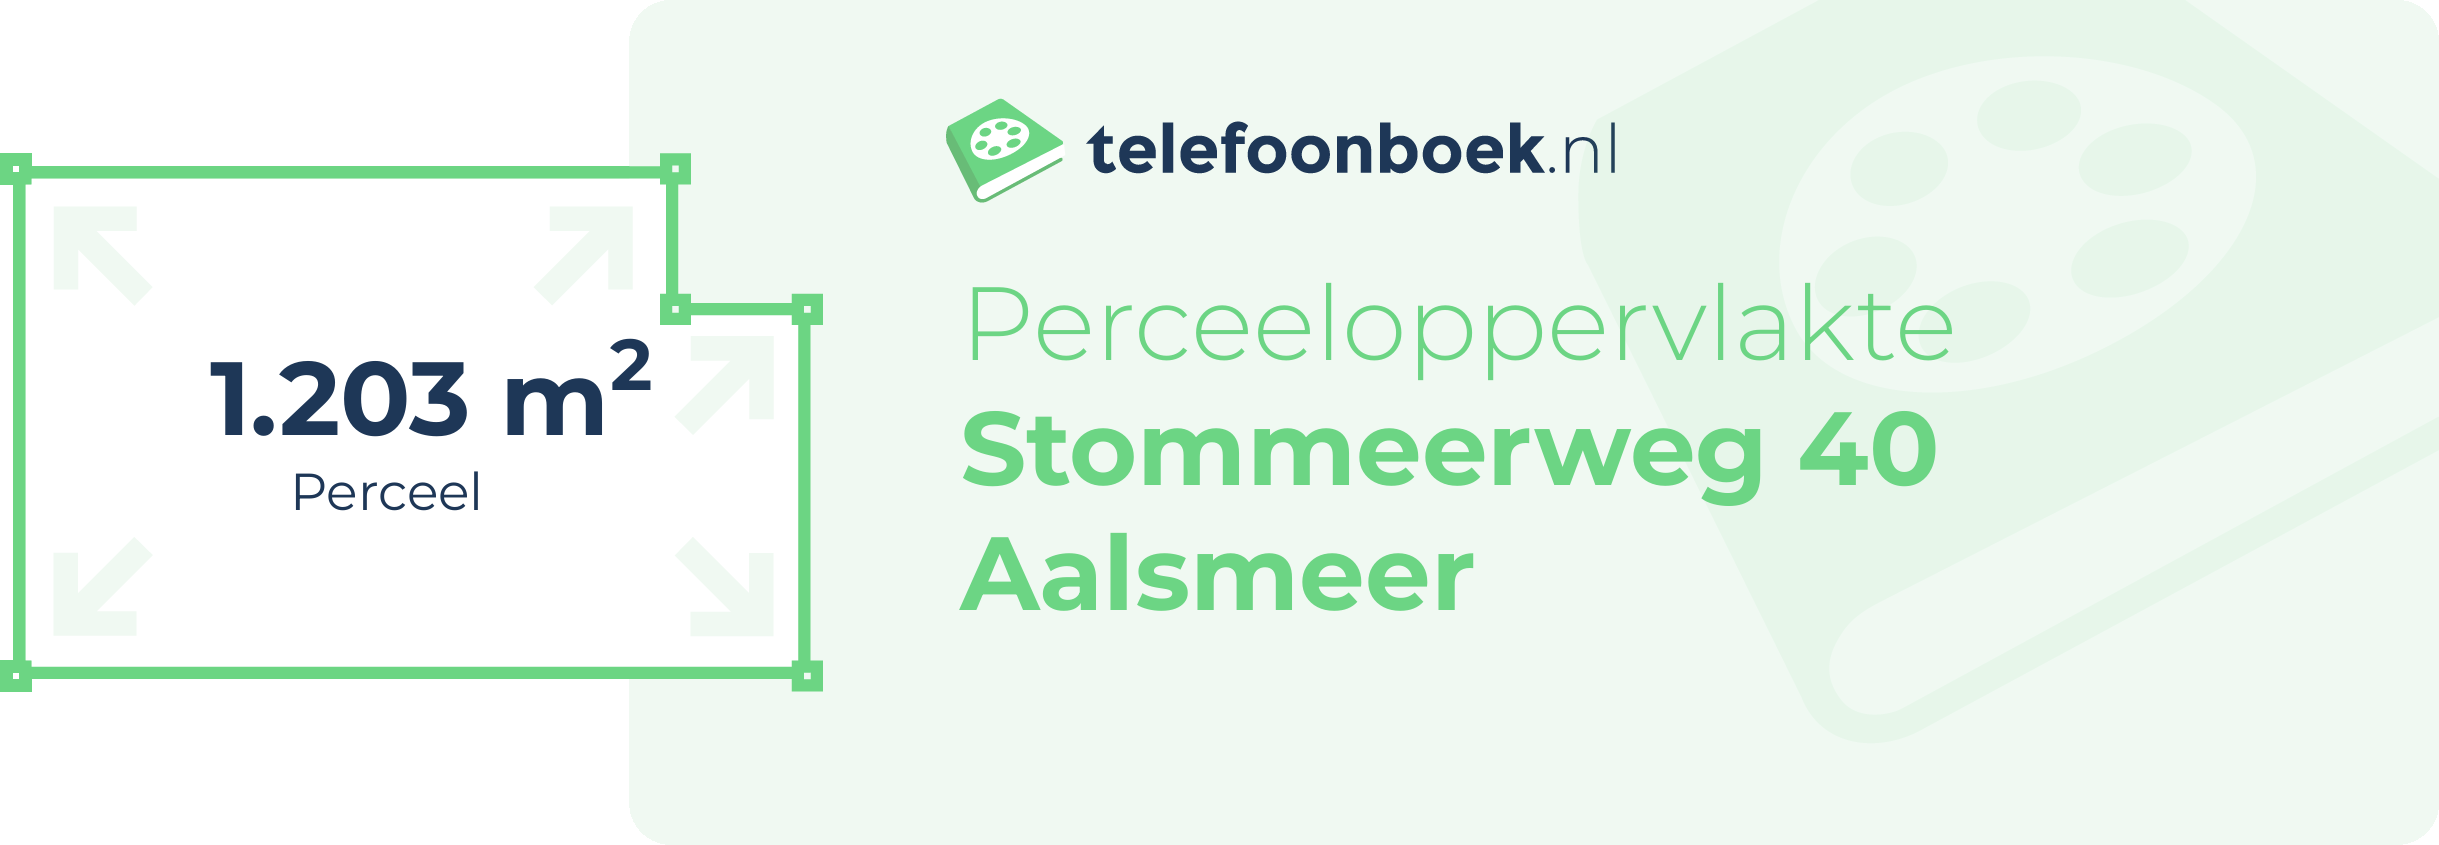 Perceeloppervlakte Stommeerweg 40 Aalsmeer